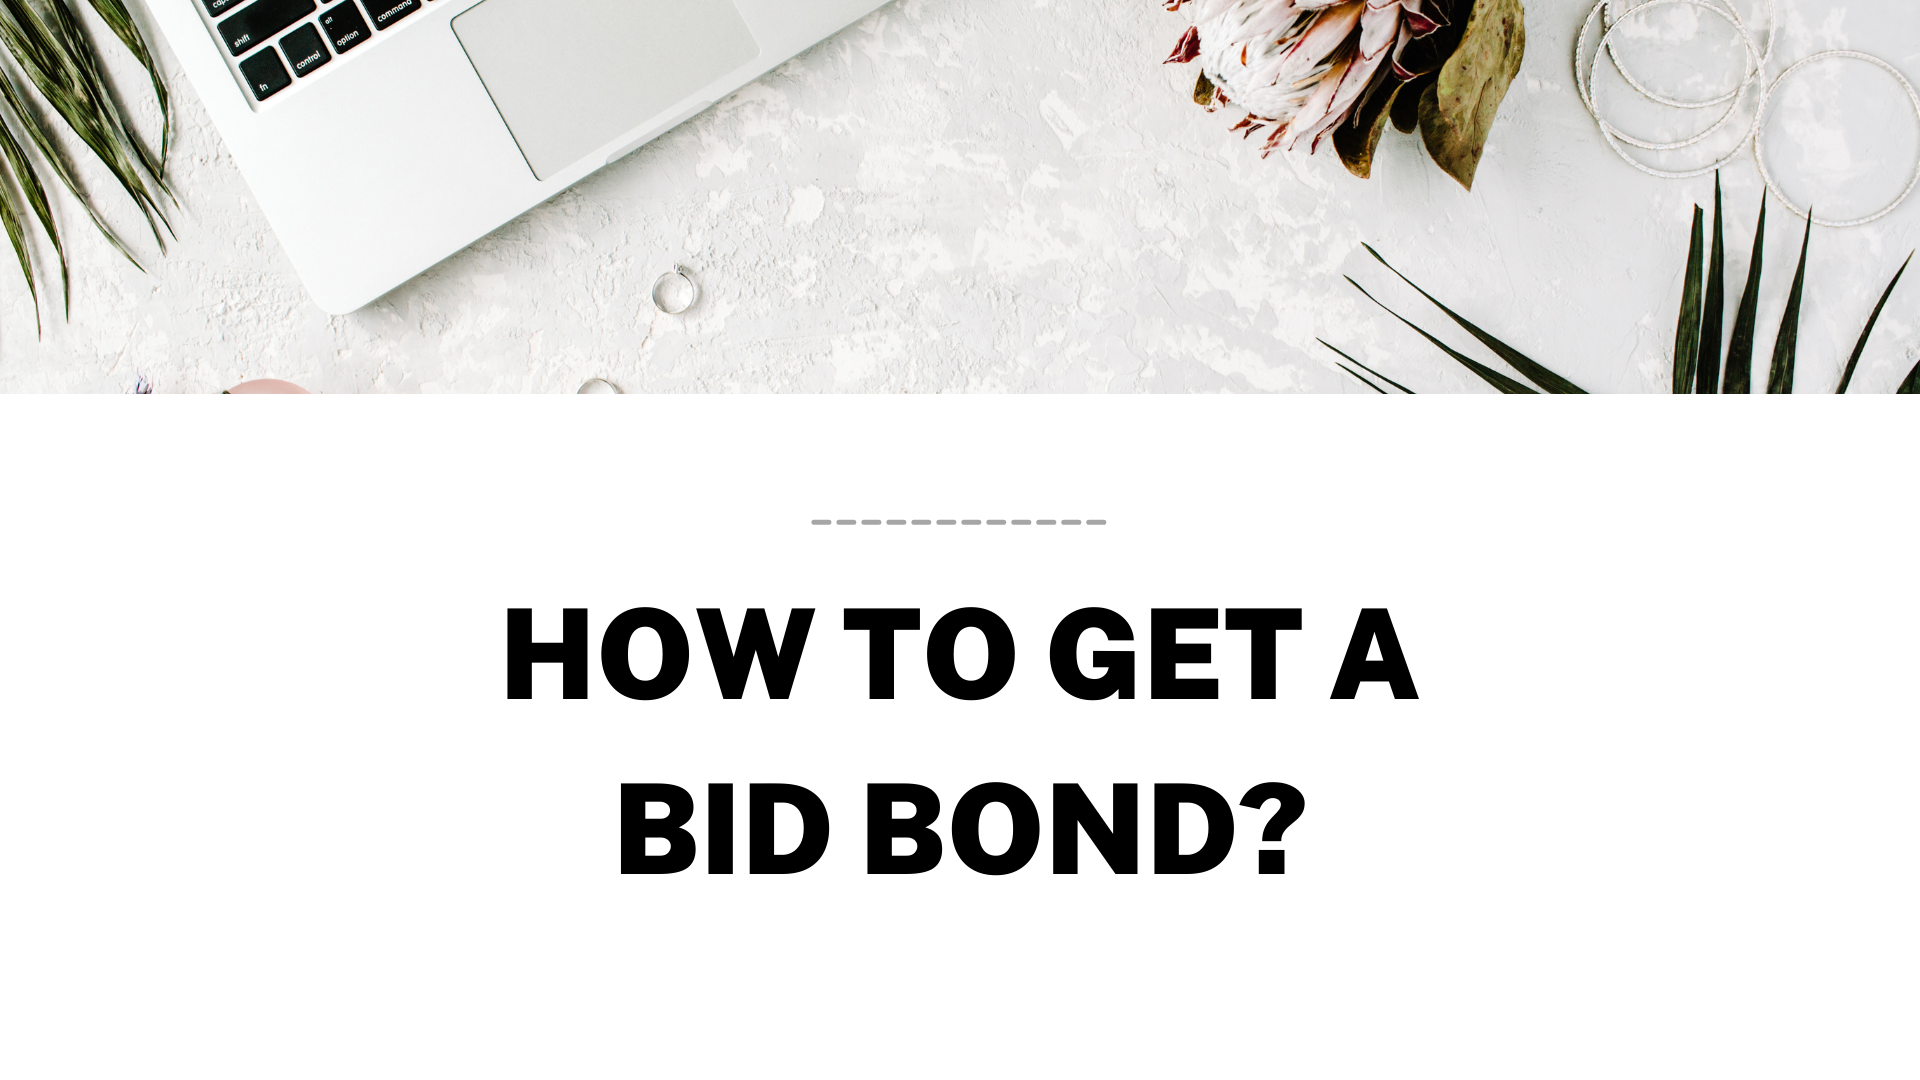 bid bond - Where to find a bid bond - workspace